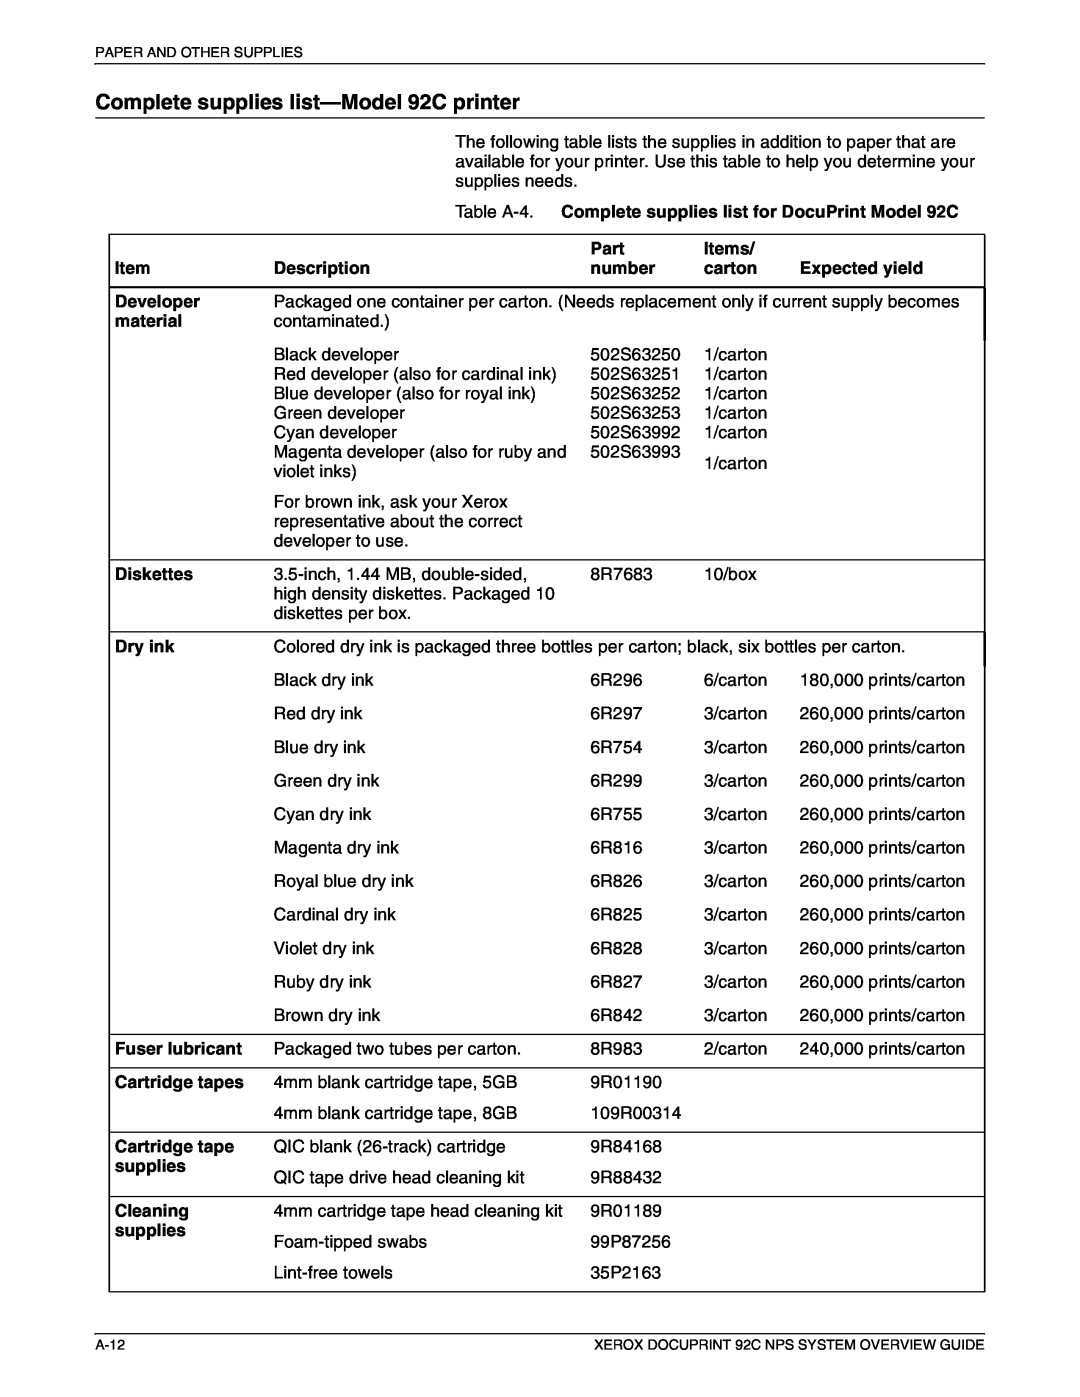 Xerox 92C NPS Complete supplies list-Model 92C printer, Table A-4. Complete supplies list for DocuPrint Model 92C, Part 